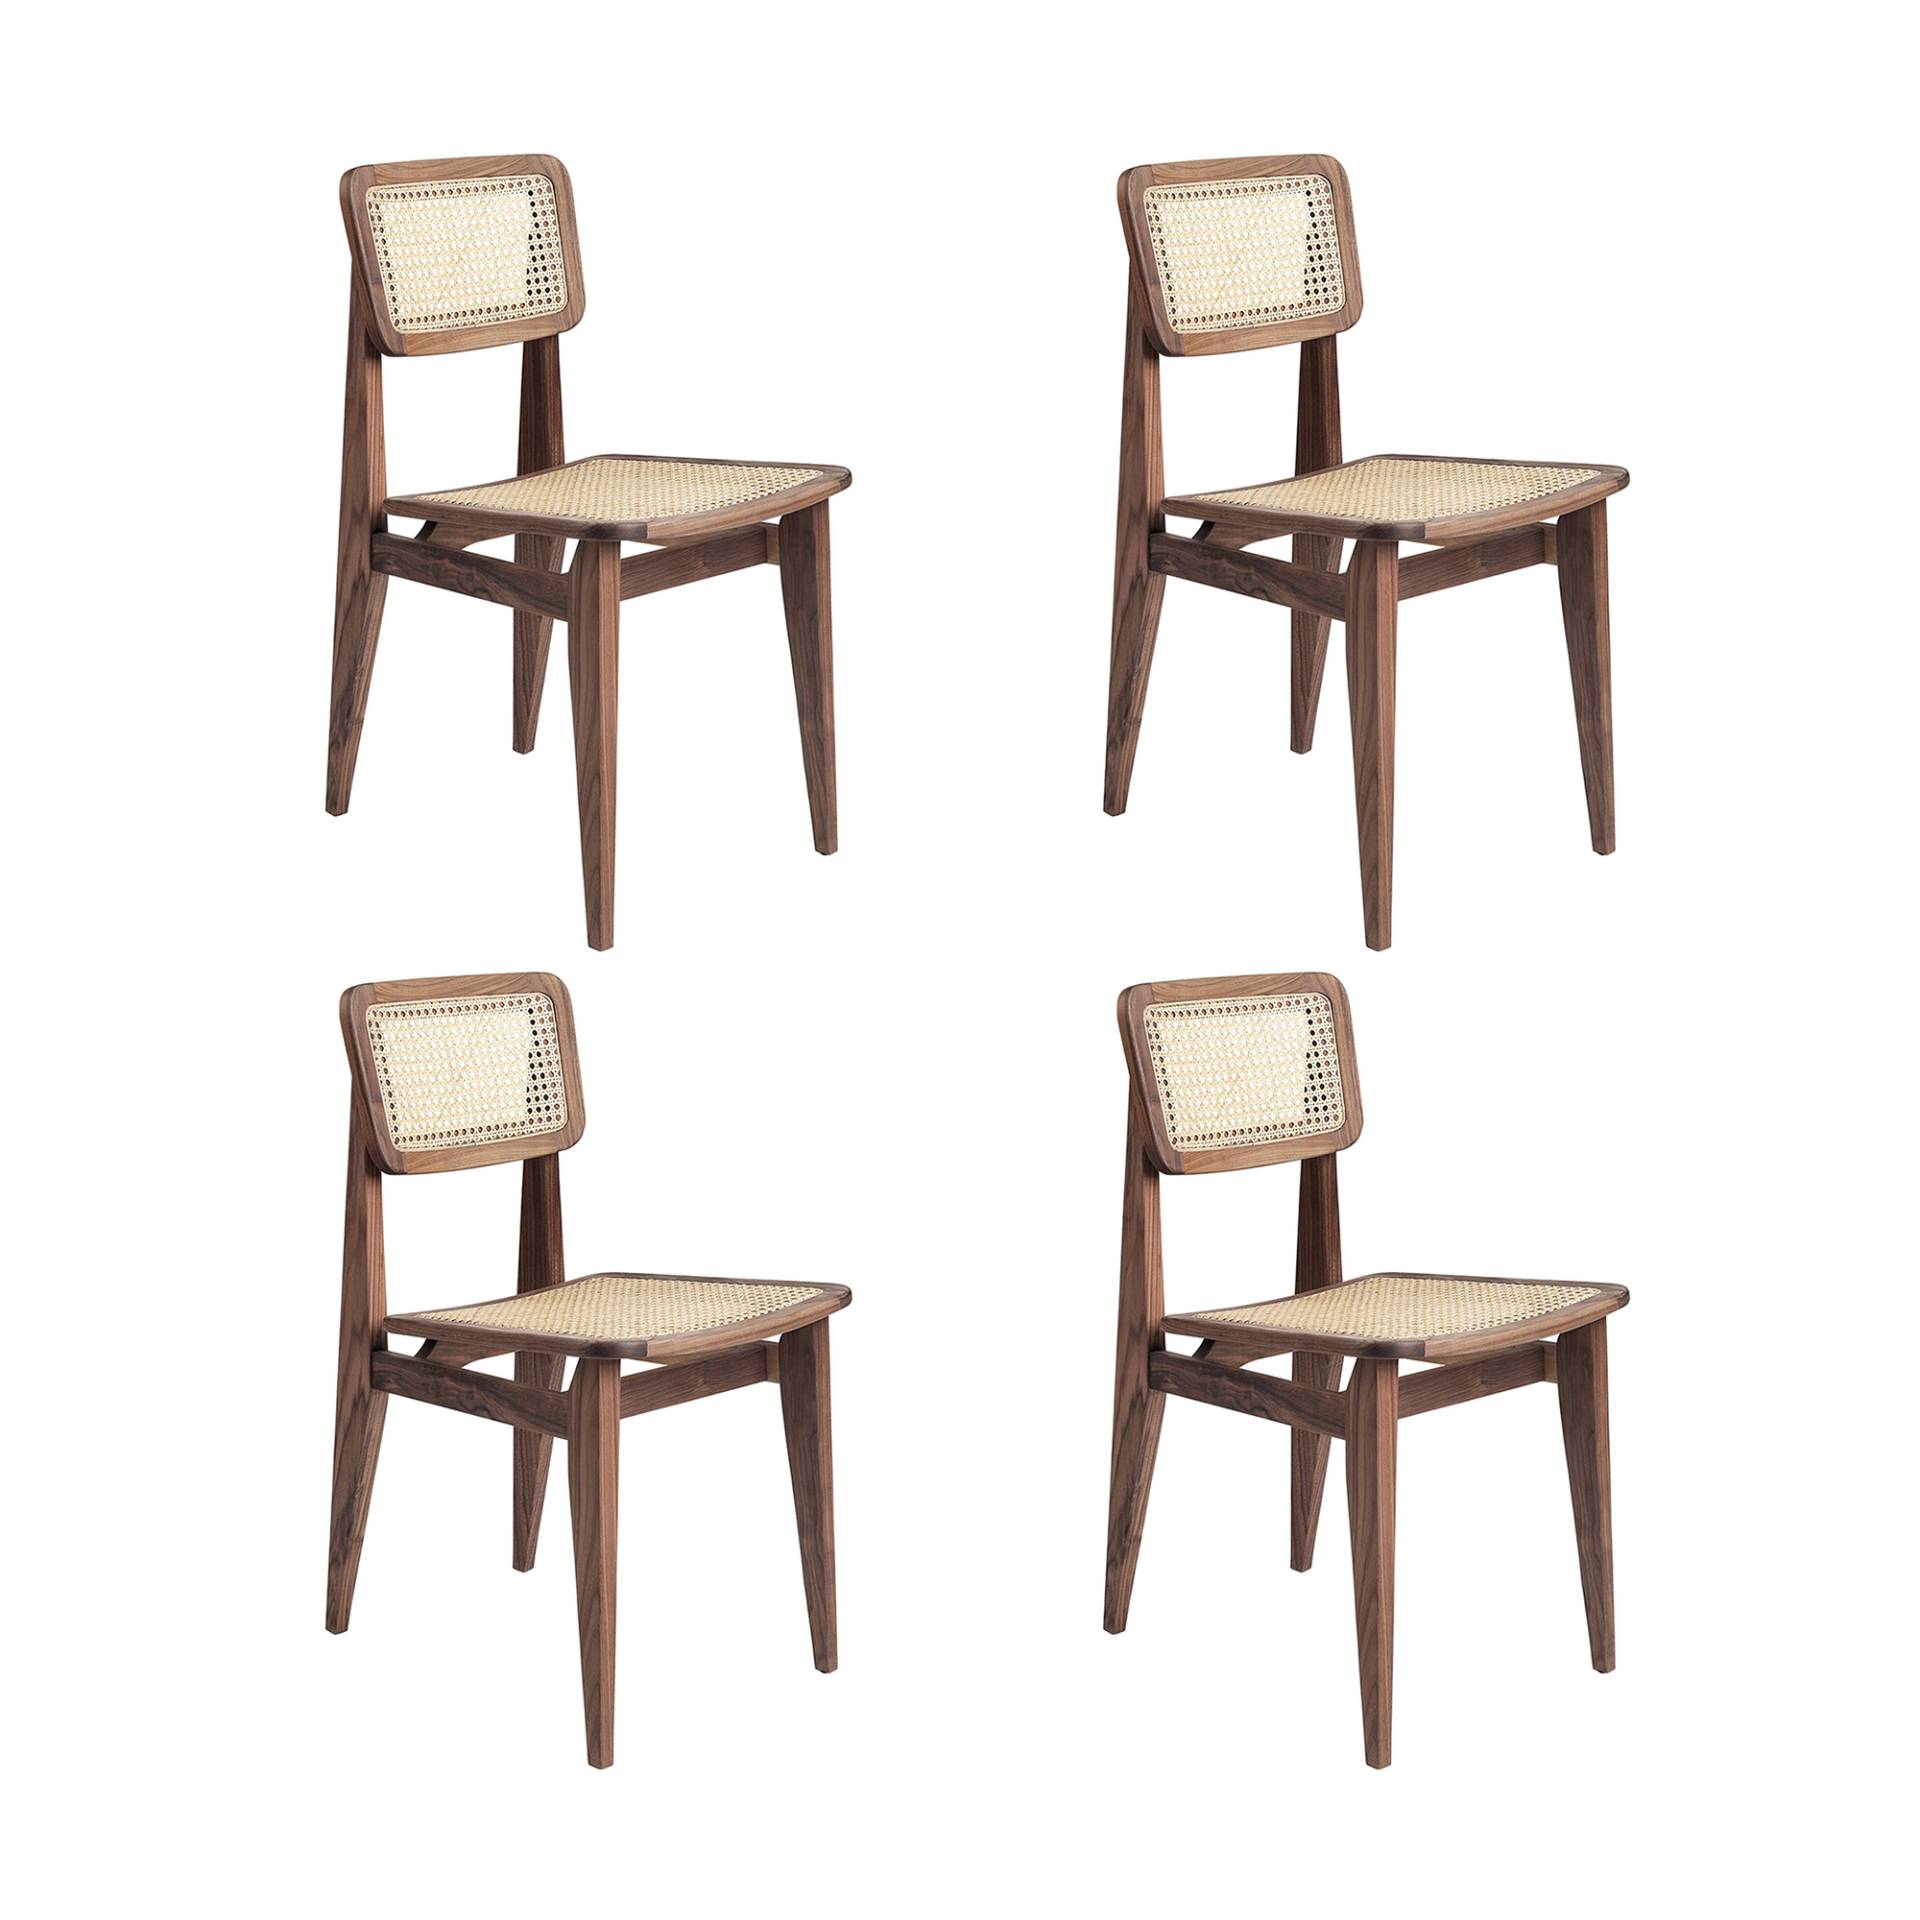 Gubi - C-Chair All French Cane Stuhl 4er Set - amerikanische Walnuss/geölt/BxHxT 41x79x53cm/mit Filzgleitern von Gubi